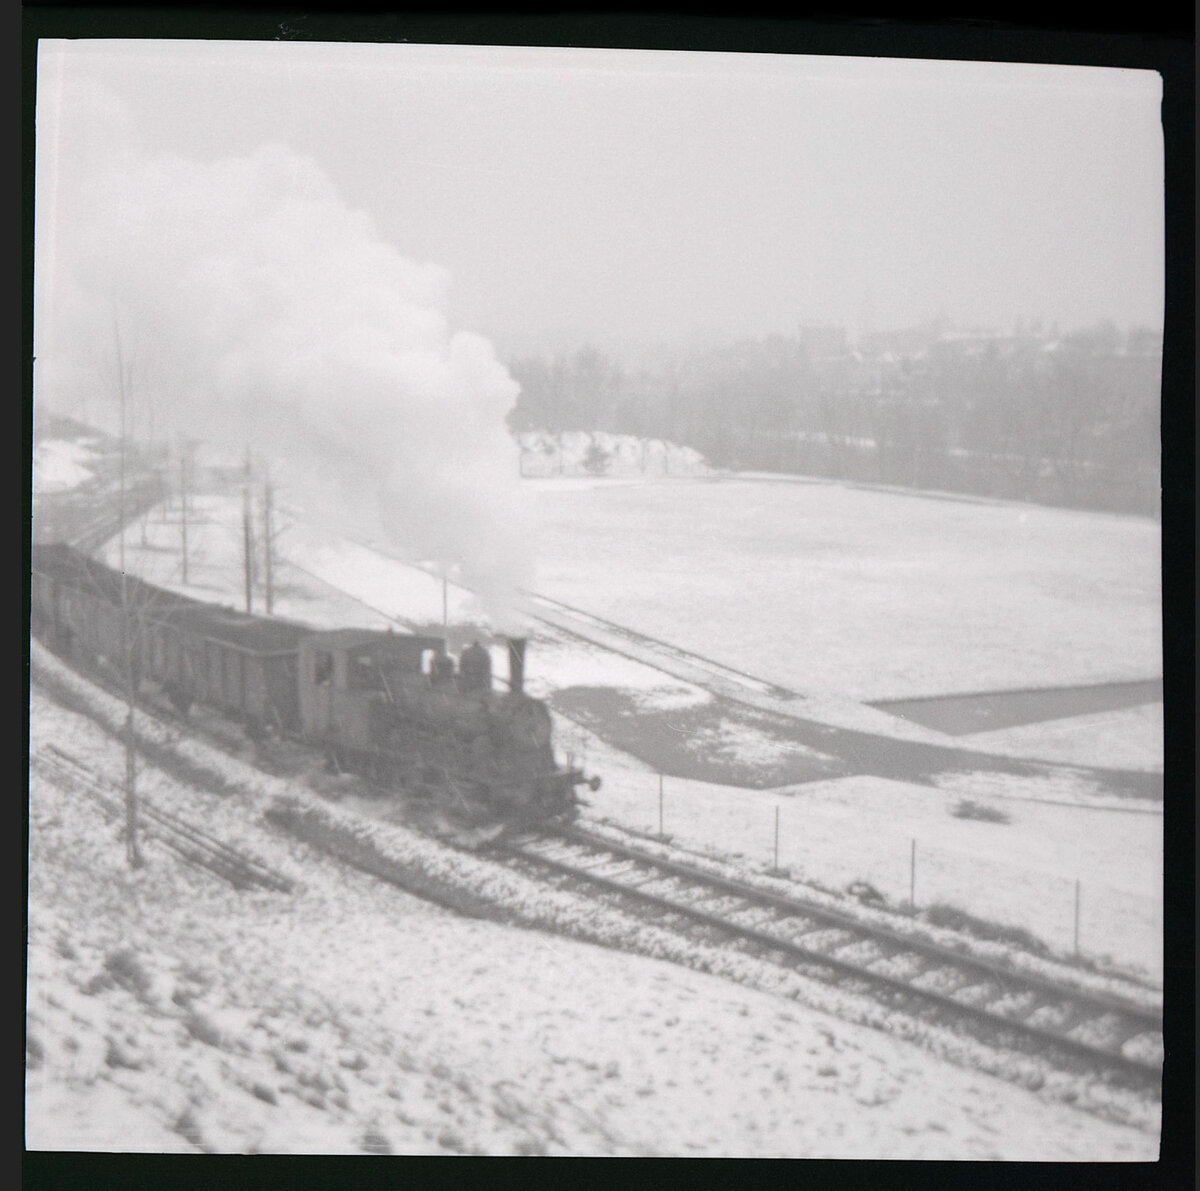 Die Gaswerkbahn Bern mit ihrer Dampflok von 1908. Wegen Ausfall der Diesellok  Mutz  kommt sie im eisig kalten und schneereichen Winter 1964 wieder zum Einsatz. 